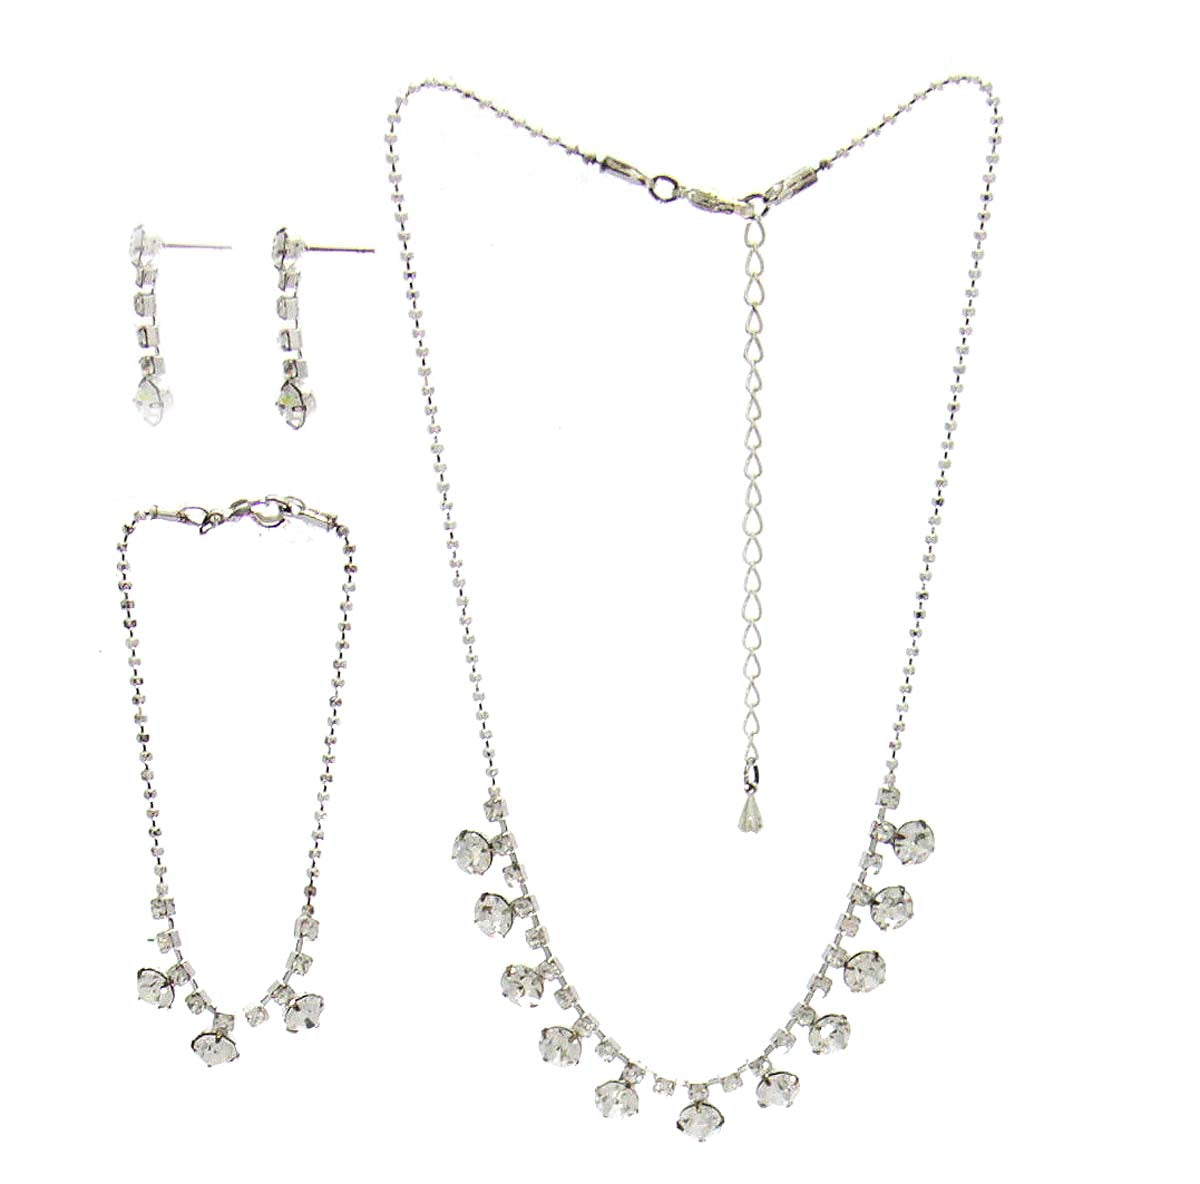 Rhinestone Necklace, Bracelet, & Earrings Jewelry Set